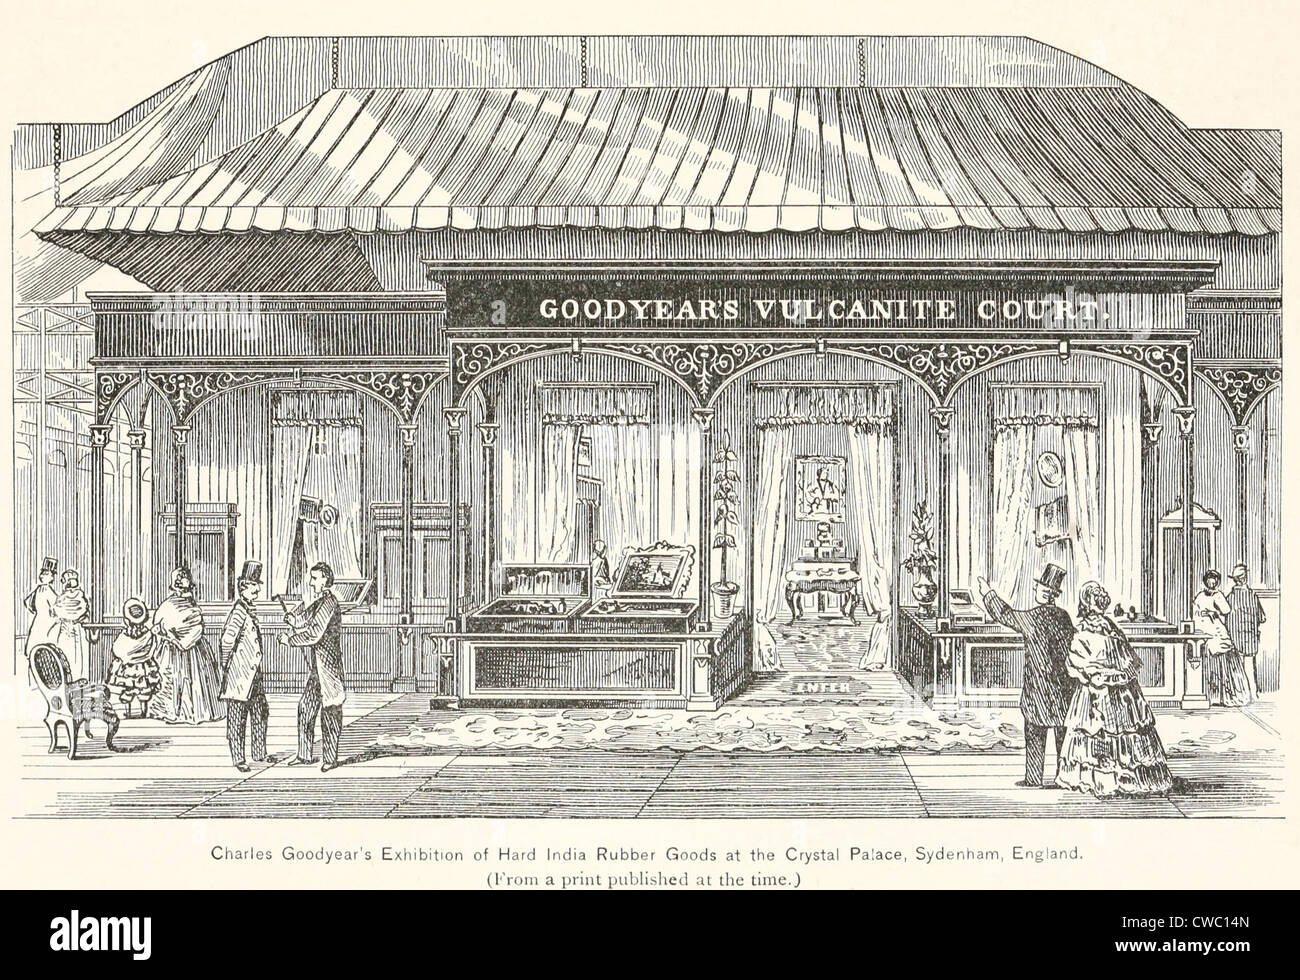 Goodyears Parakautschuk Gericht, die Ausstellung von harten Kautschuk waren in der Crystal Palace-Ausstellung im Jahre 1851. Goodyear verbringen Stockfoto